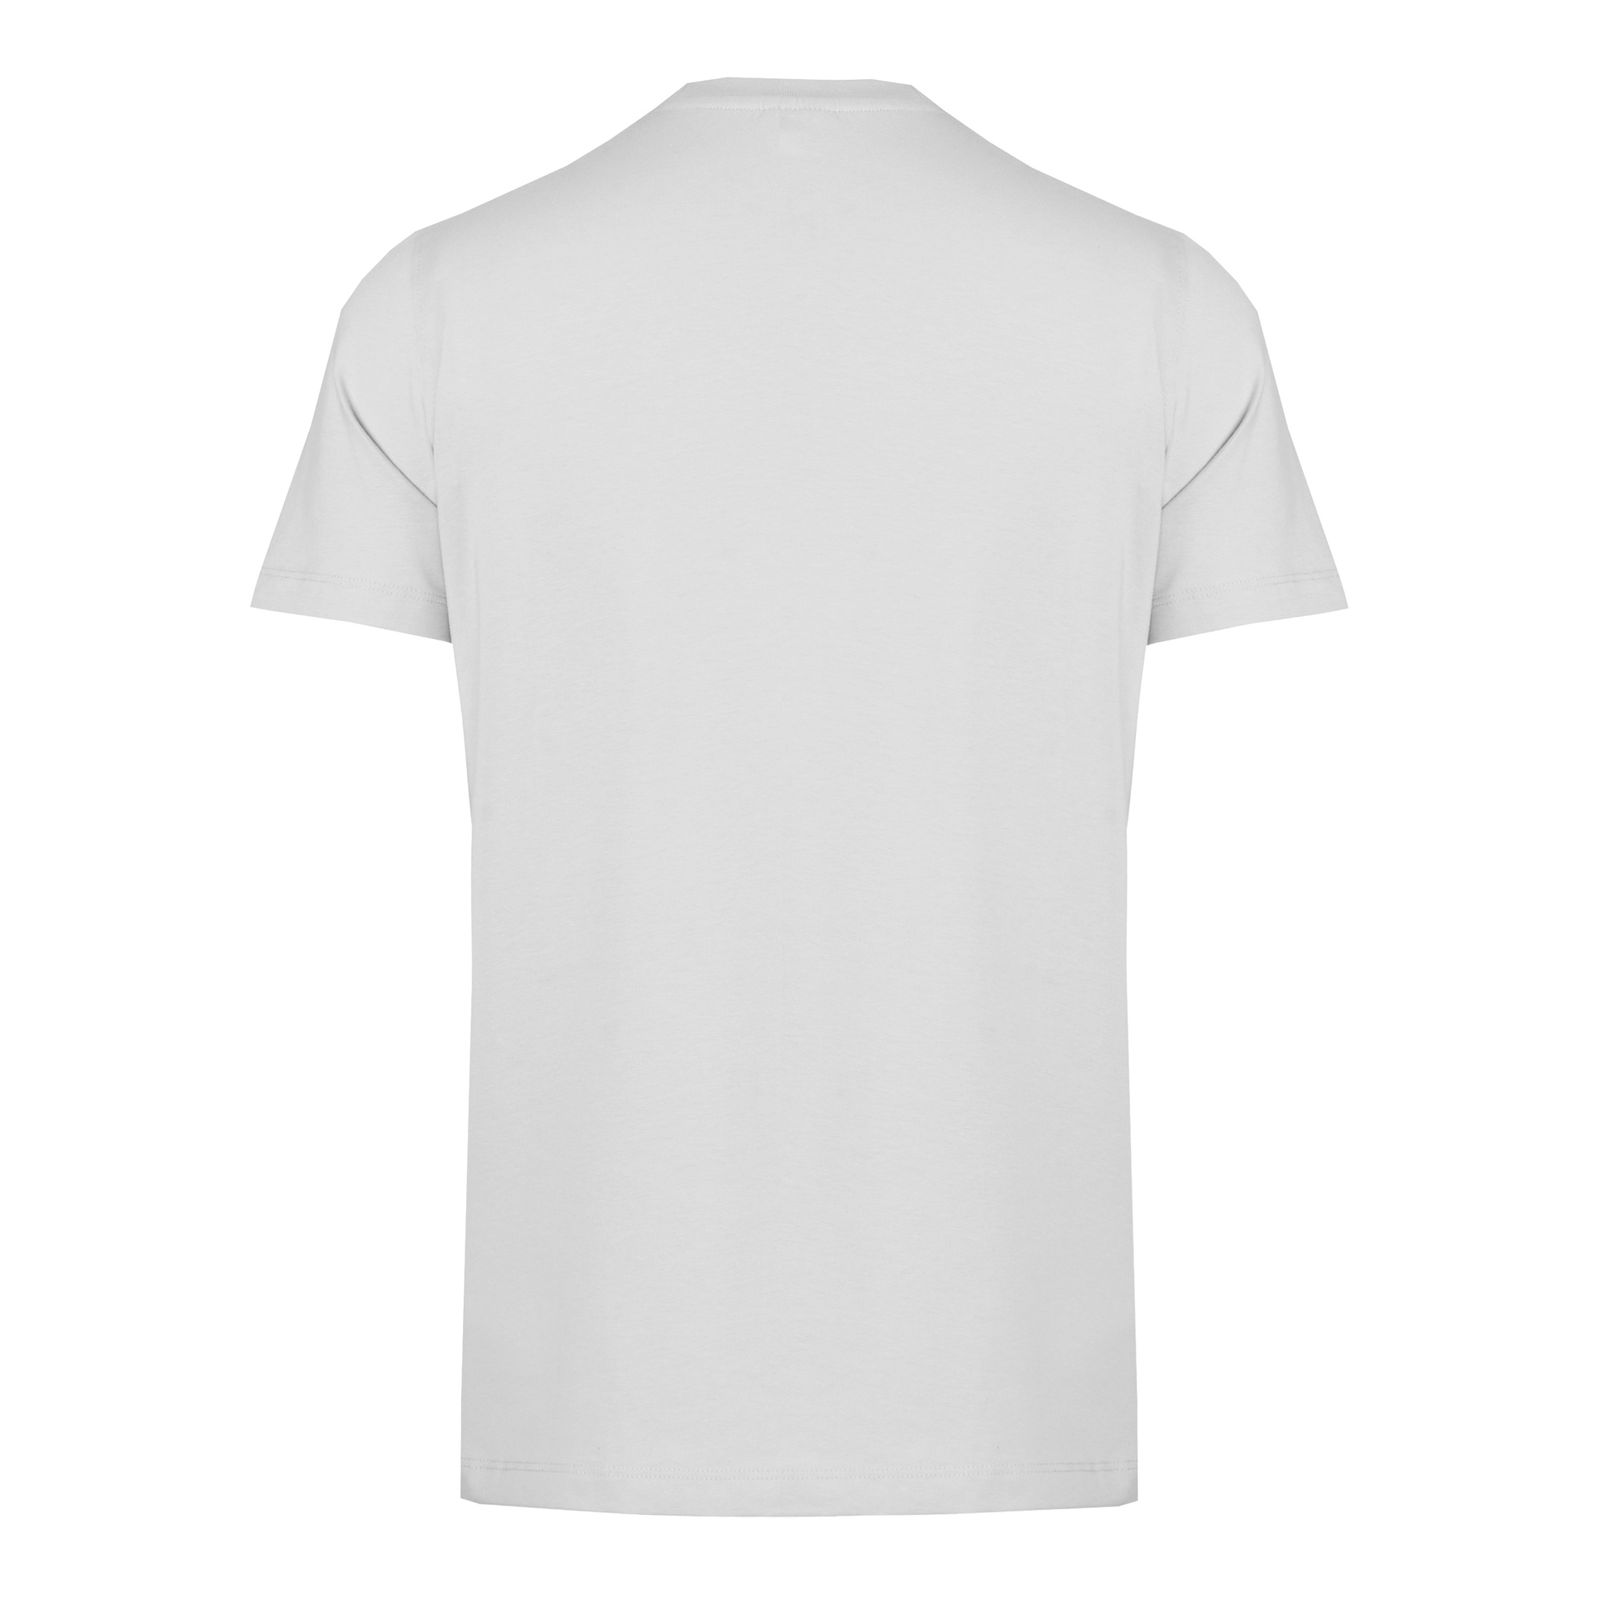 تی شرت آستین کوتاه مردانه جی تی هوگرو مدل 1035130 -  - 2